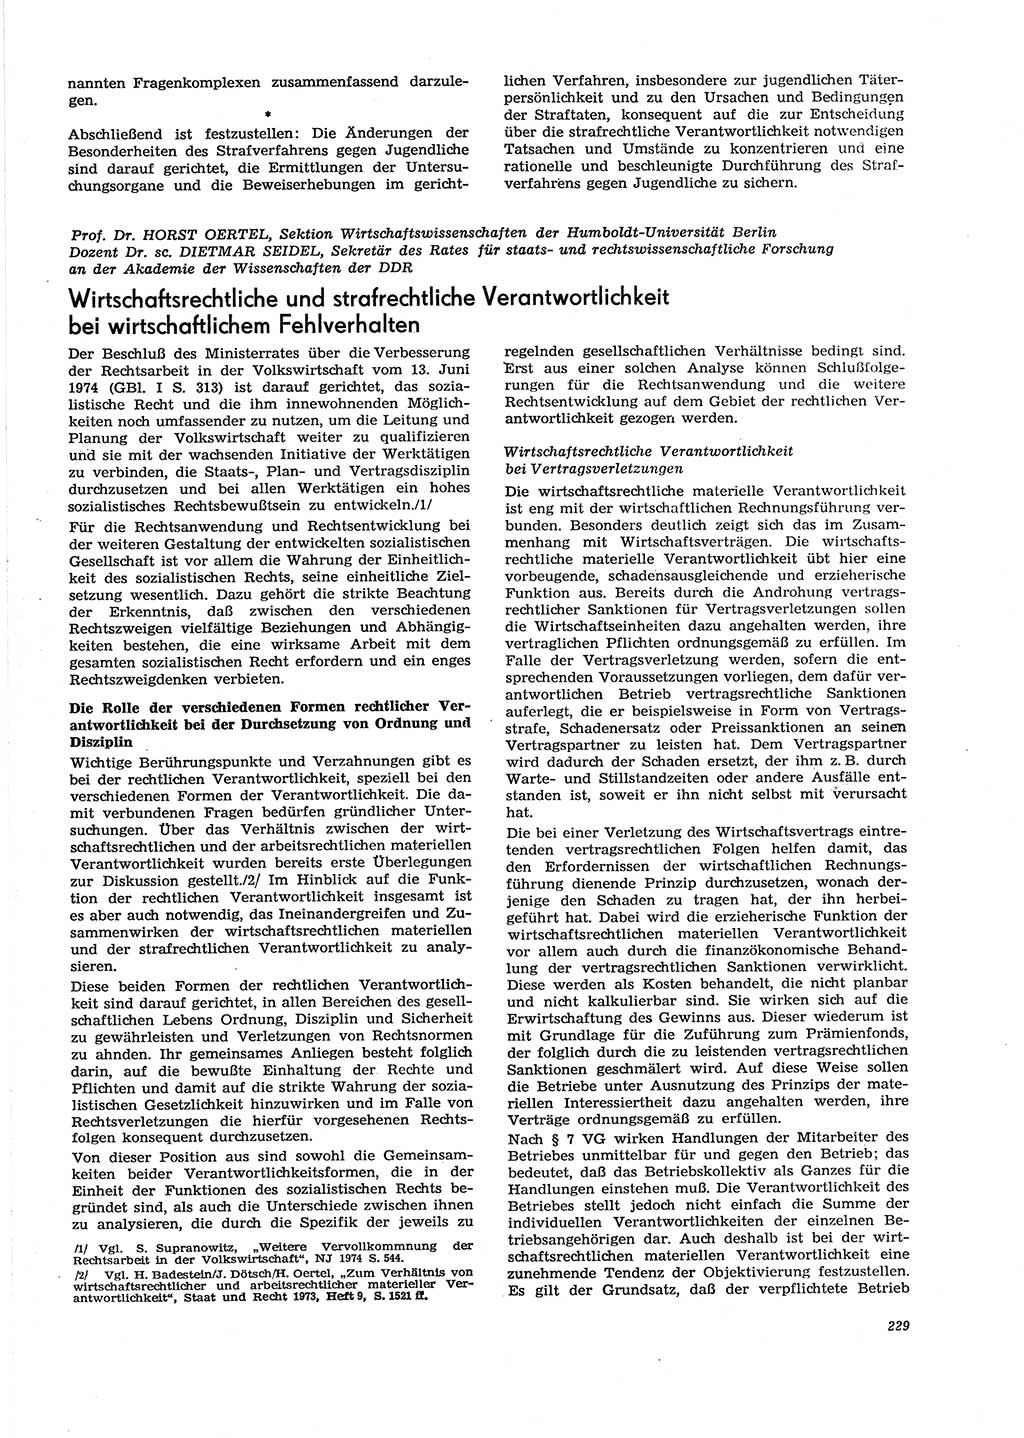 Neue Justiz (NJ), Zeitschrift für Recht und Rechtswissenschaft [Deutsche Demokratische Republik (DDR)], 29. Jahrgang 1975, Seite 229 (NJ DDR 1975, S. 229)